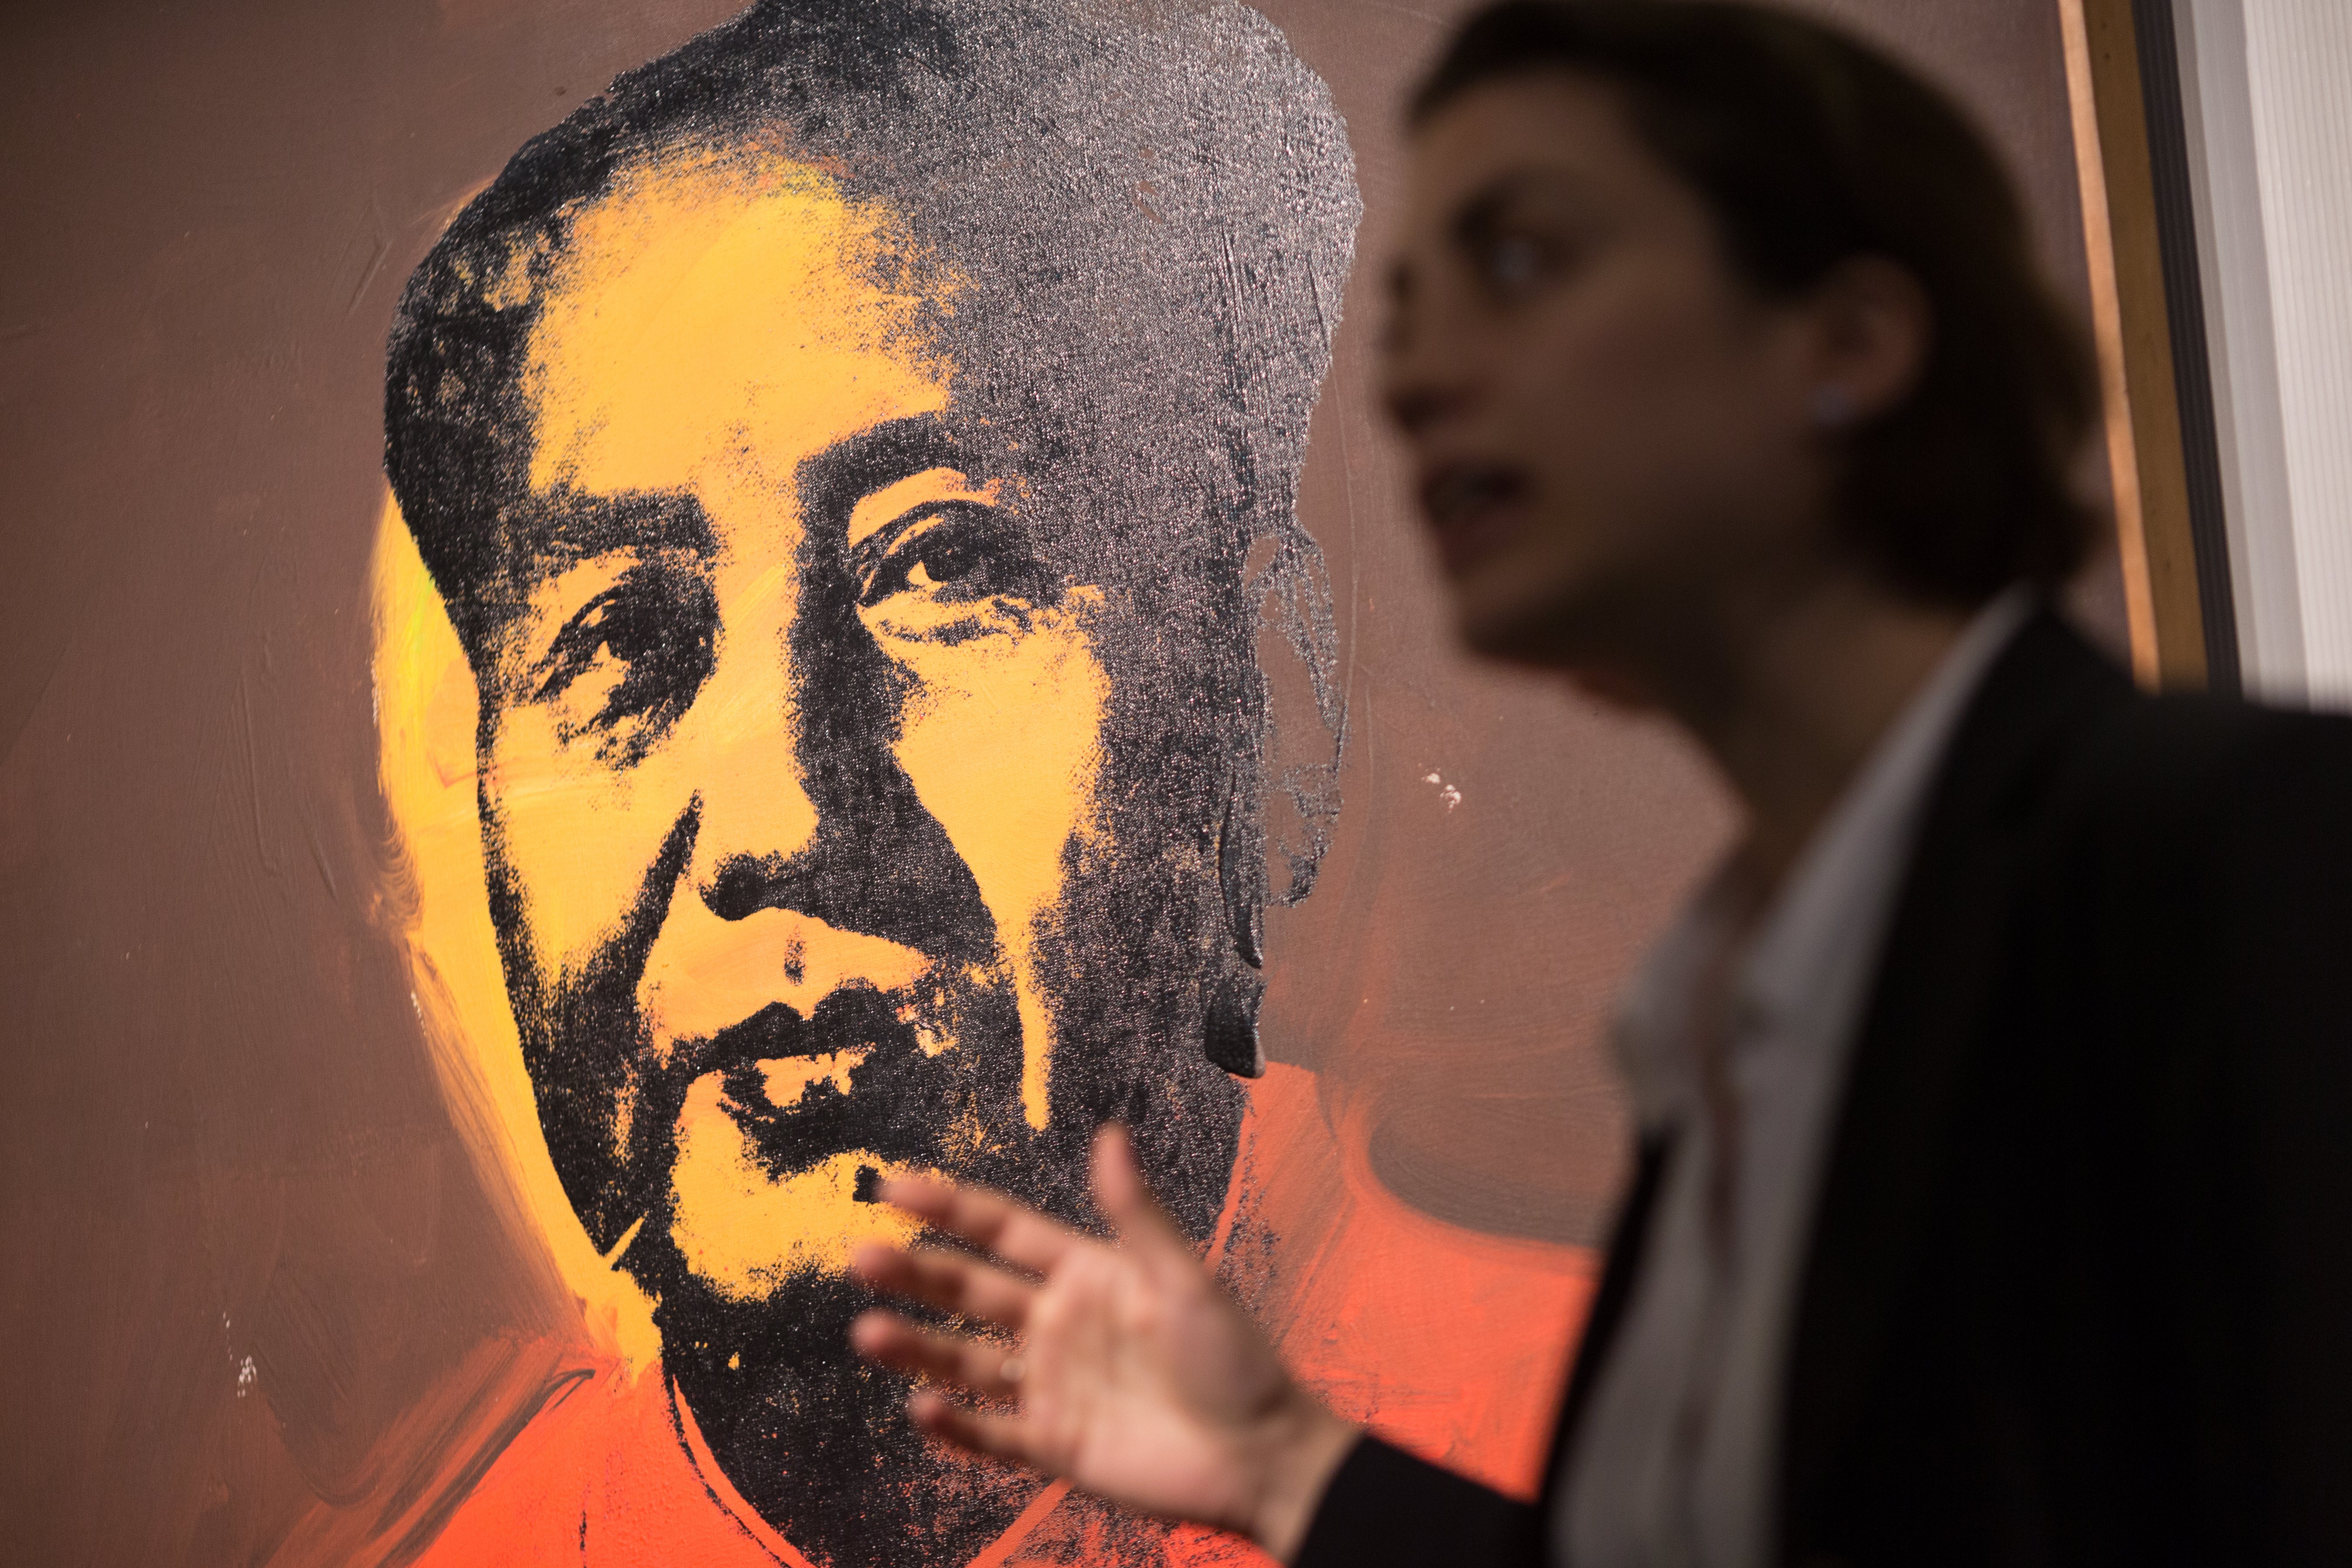 Πορτρέτο του Μάο διά χειρός Γουόρχολ βγαίνει στο σφυρί στο Χονγκ Κονγκ